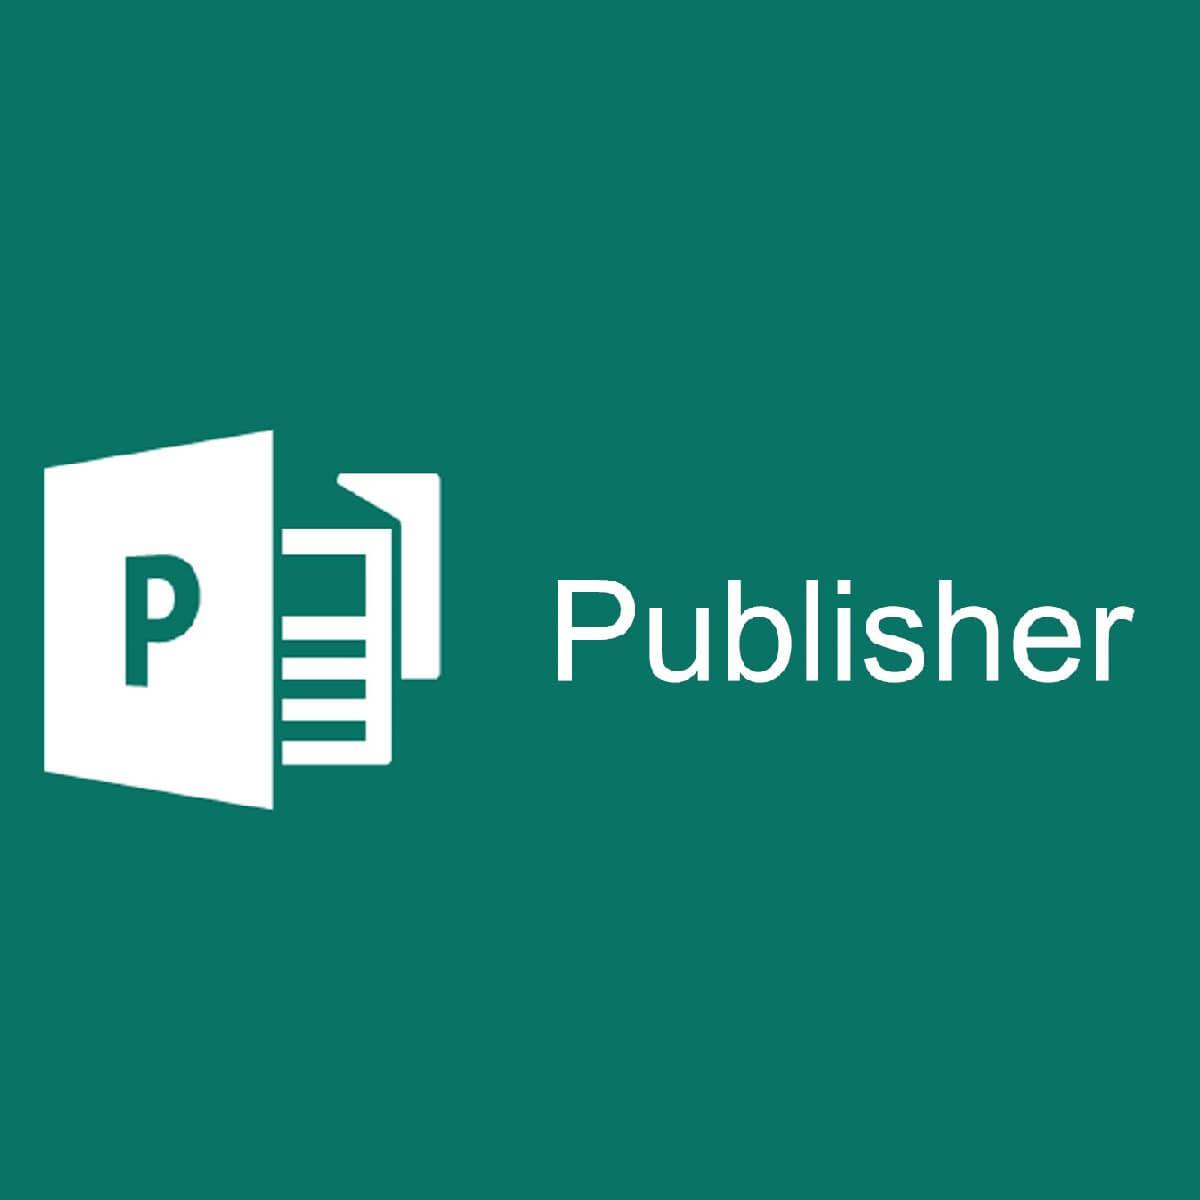 Tìm hiểu các chức năng của Microsoft Publisher và các ưu điểm của nó, hoàn tất!